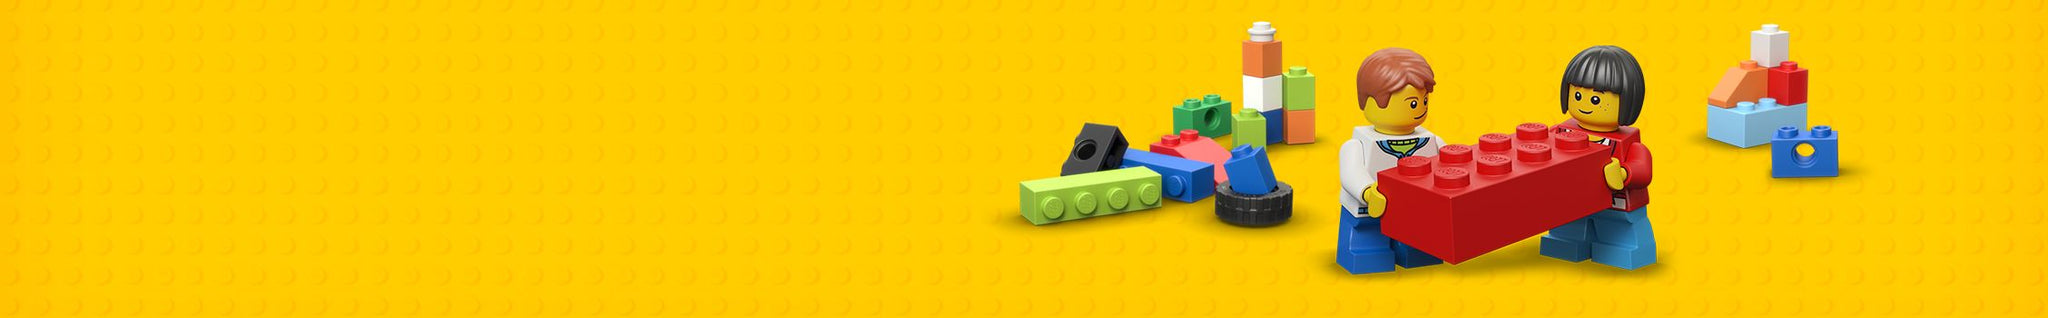 Bestellen Sie günstiges LEGO im LEGO Store in den Niederlanden